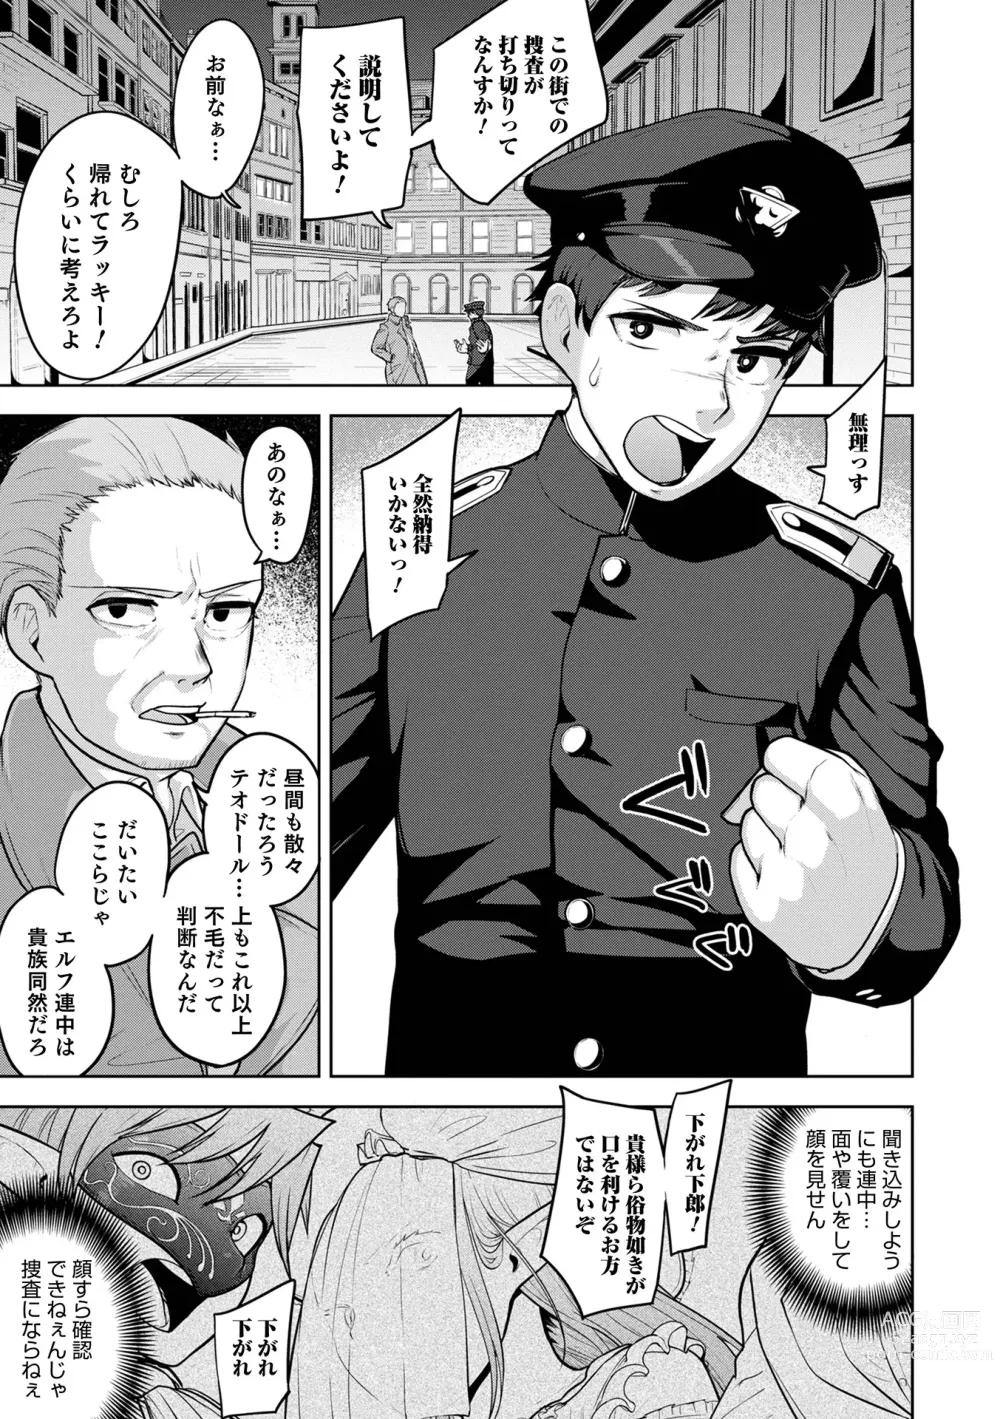 Page 25 of manga Muchiniku Otokonoko Tenshi’s